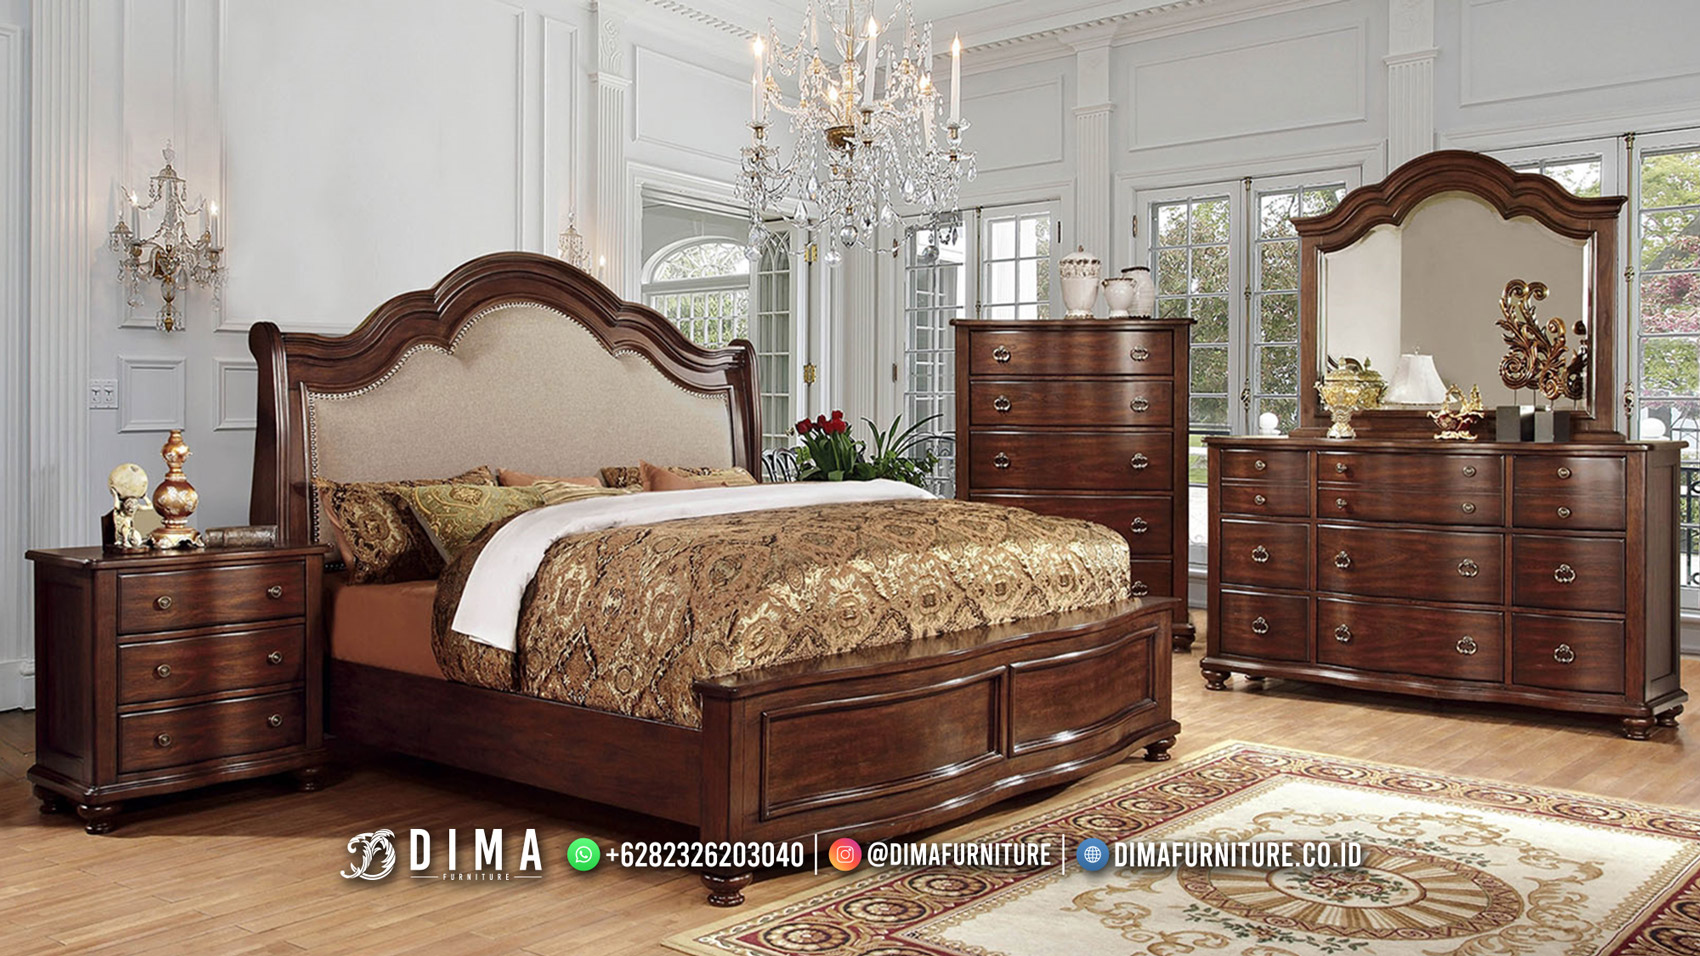 Artful Kamar Mewah Jati Terlaris Dima Furniture Official BT2210